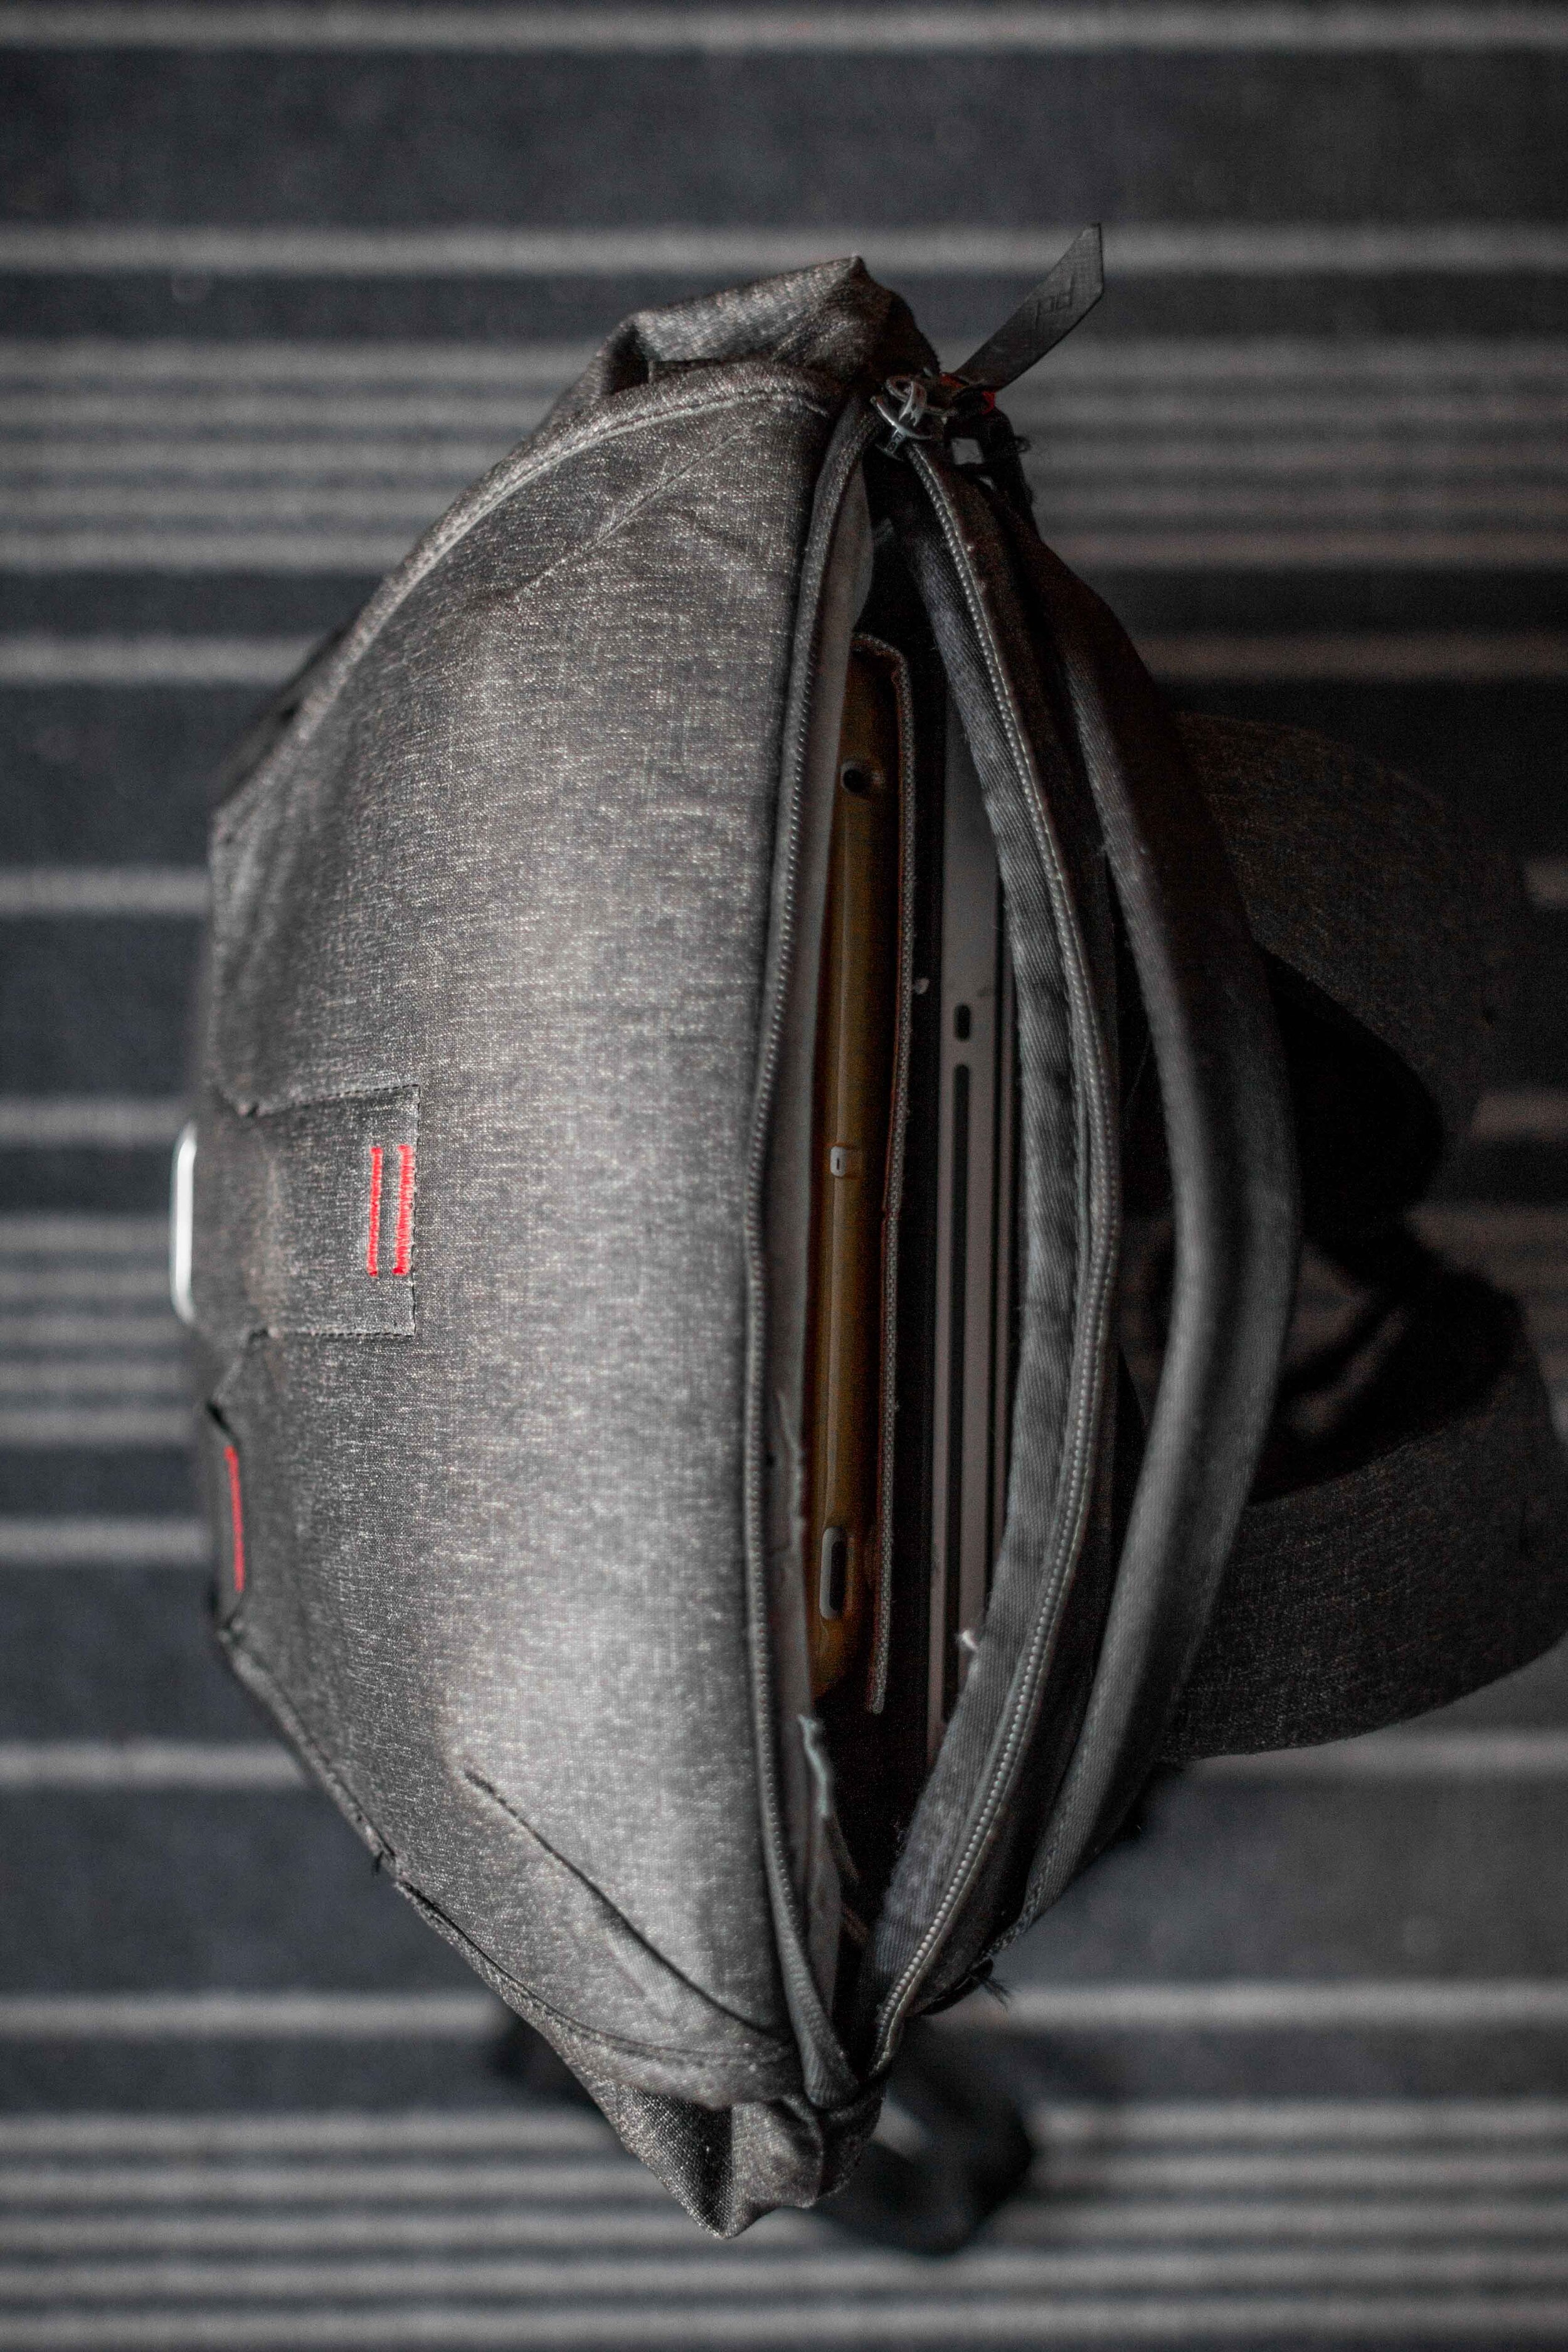 peak design everyday backpack V1 20L